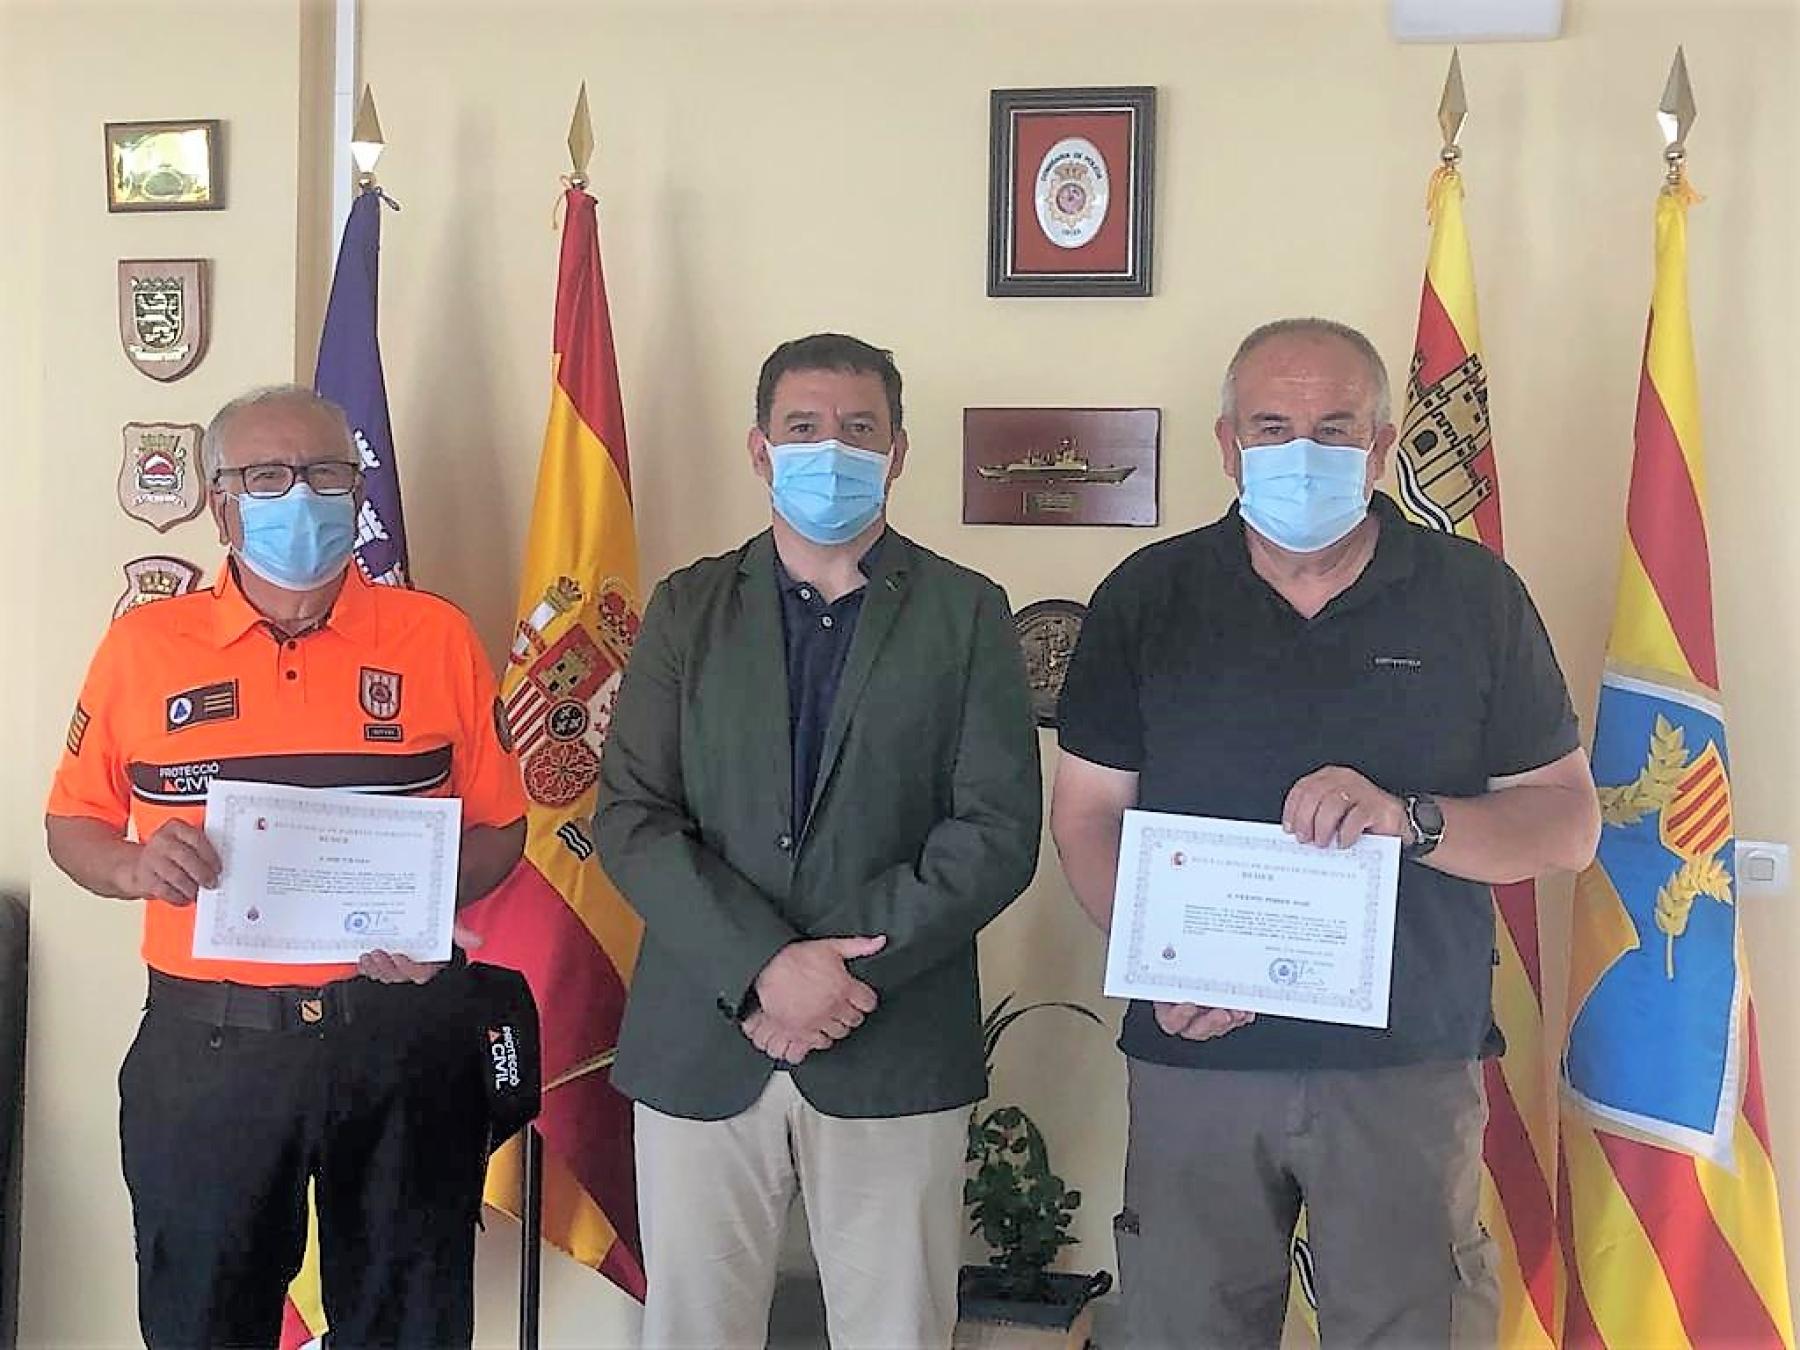 Protección Civil reconoce la labor de voluntariado desarrollada por los radioaficionados de la REMER Vicent Ferrer Marí y José Tur Sala a lo largo de más de tres décadas